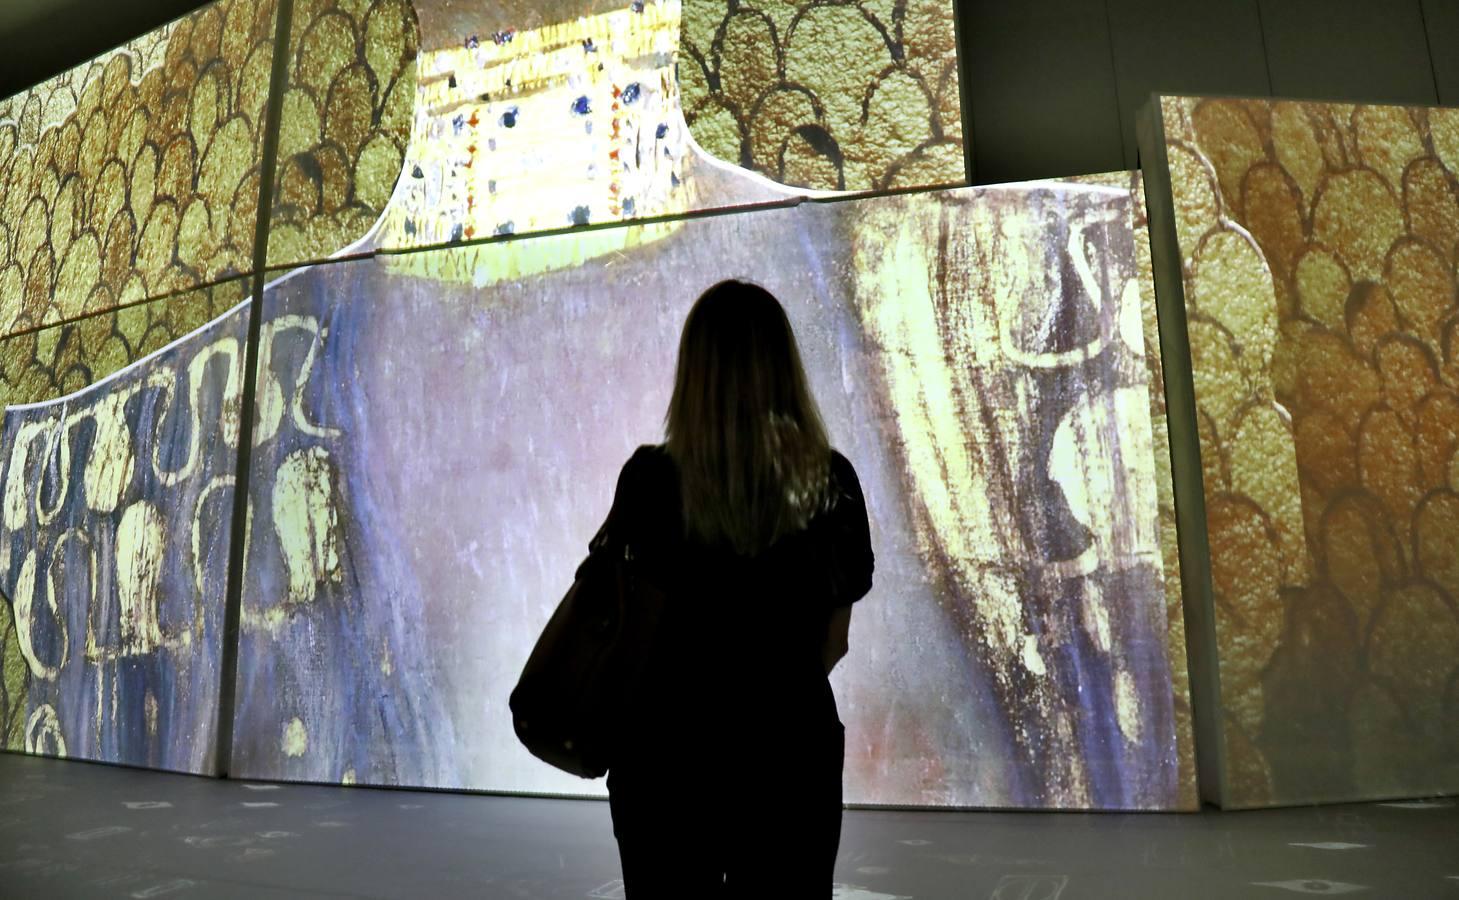 La exposición «El oro de Klimt» llega al Pabellón de la Navegación de Sevilla